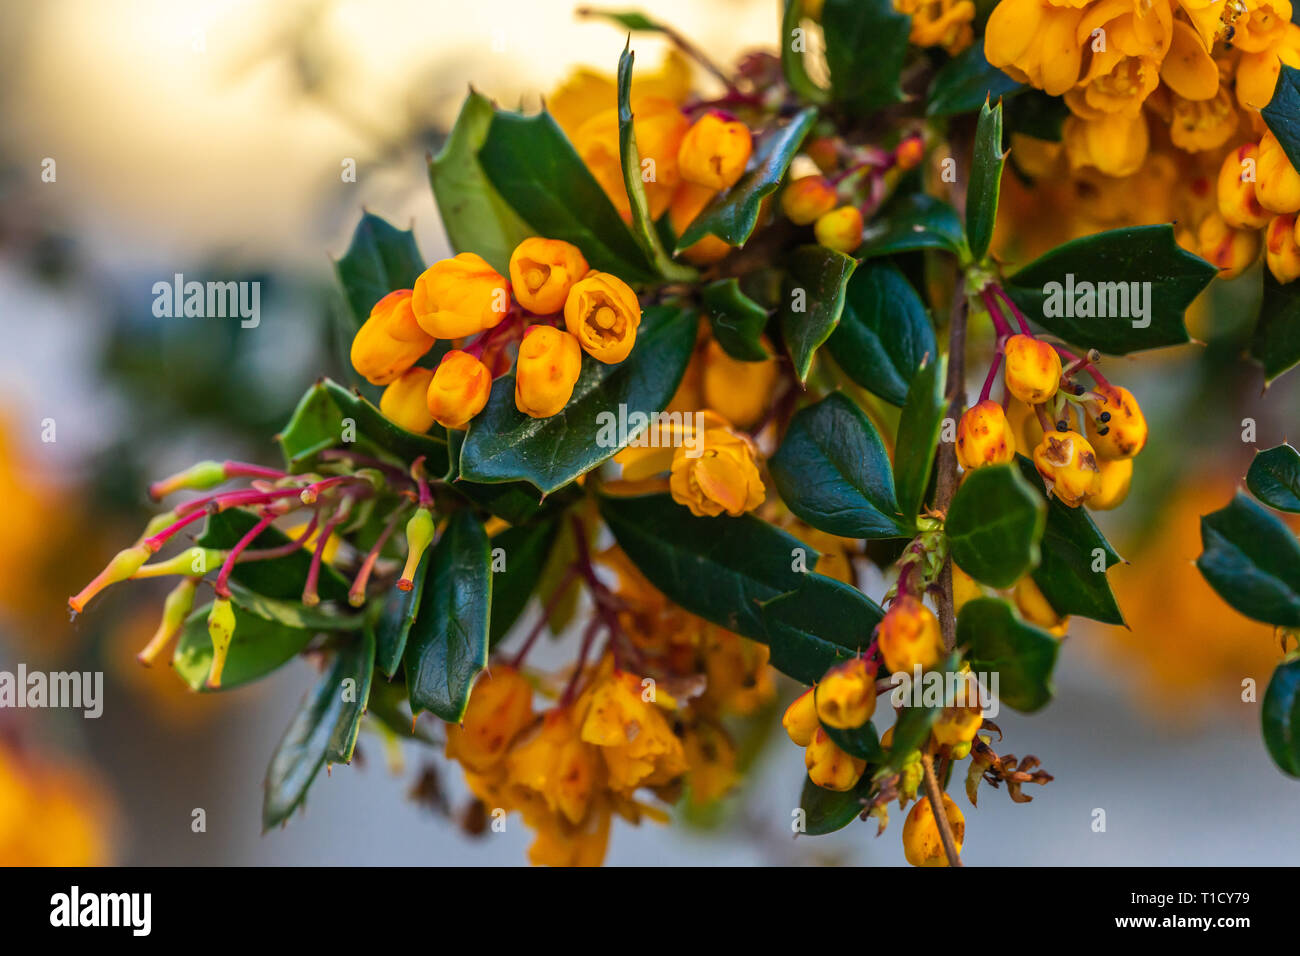 L'épine-vinette de Darwin - Berberis darwinii - un arbuste avec ses grappes tombantes colorés de fleurs orange vif au printemps au Royaume-Uni Banque D'Images